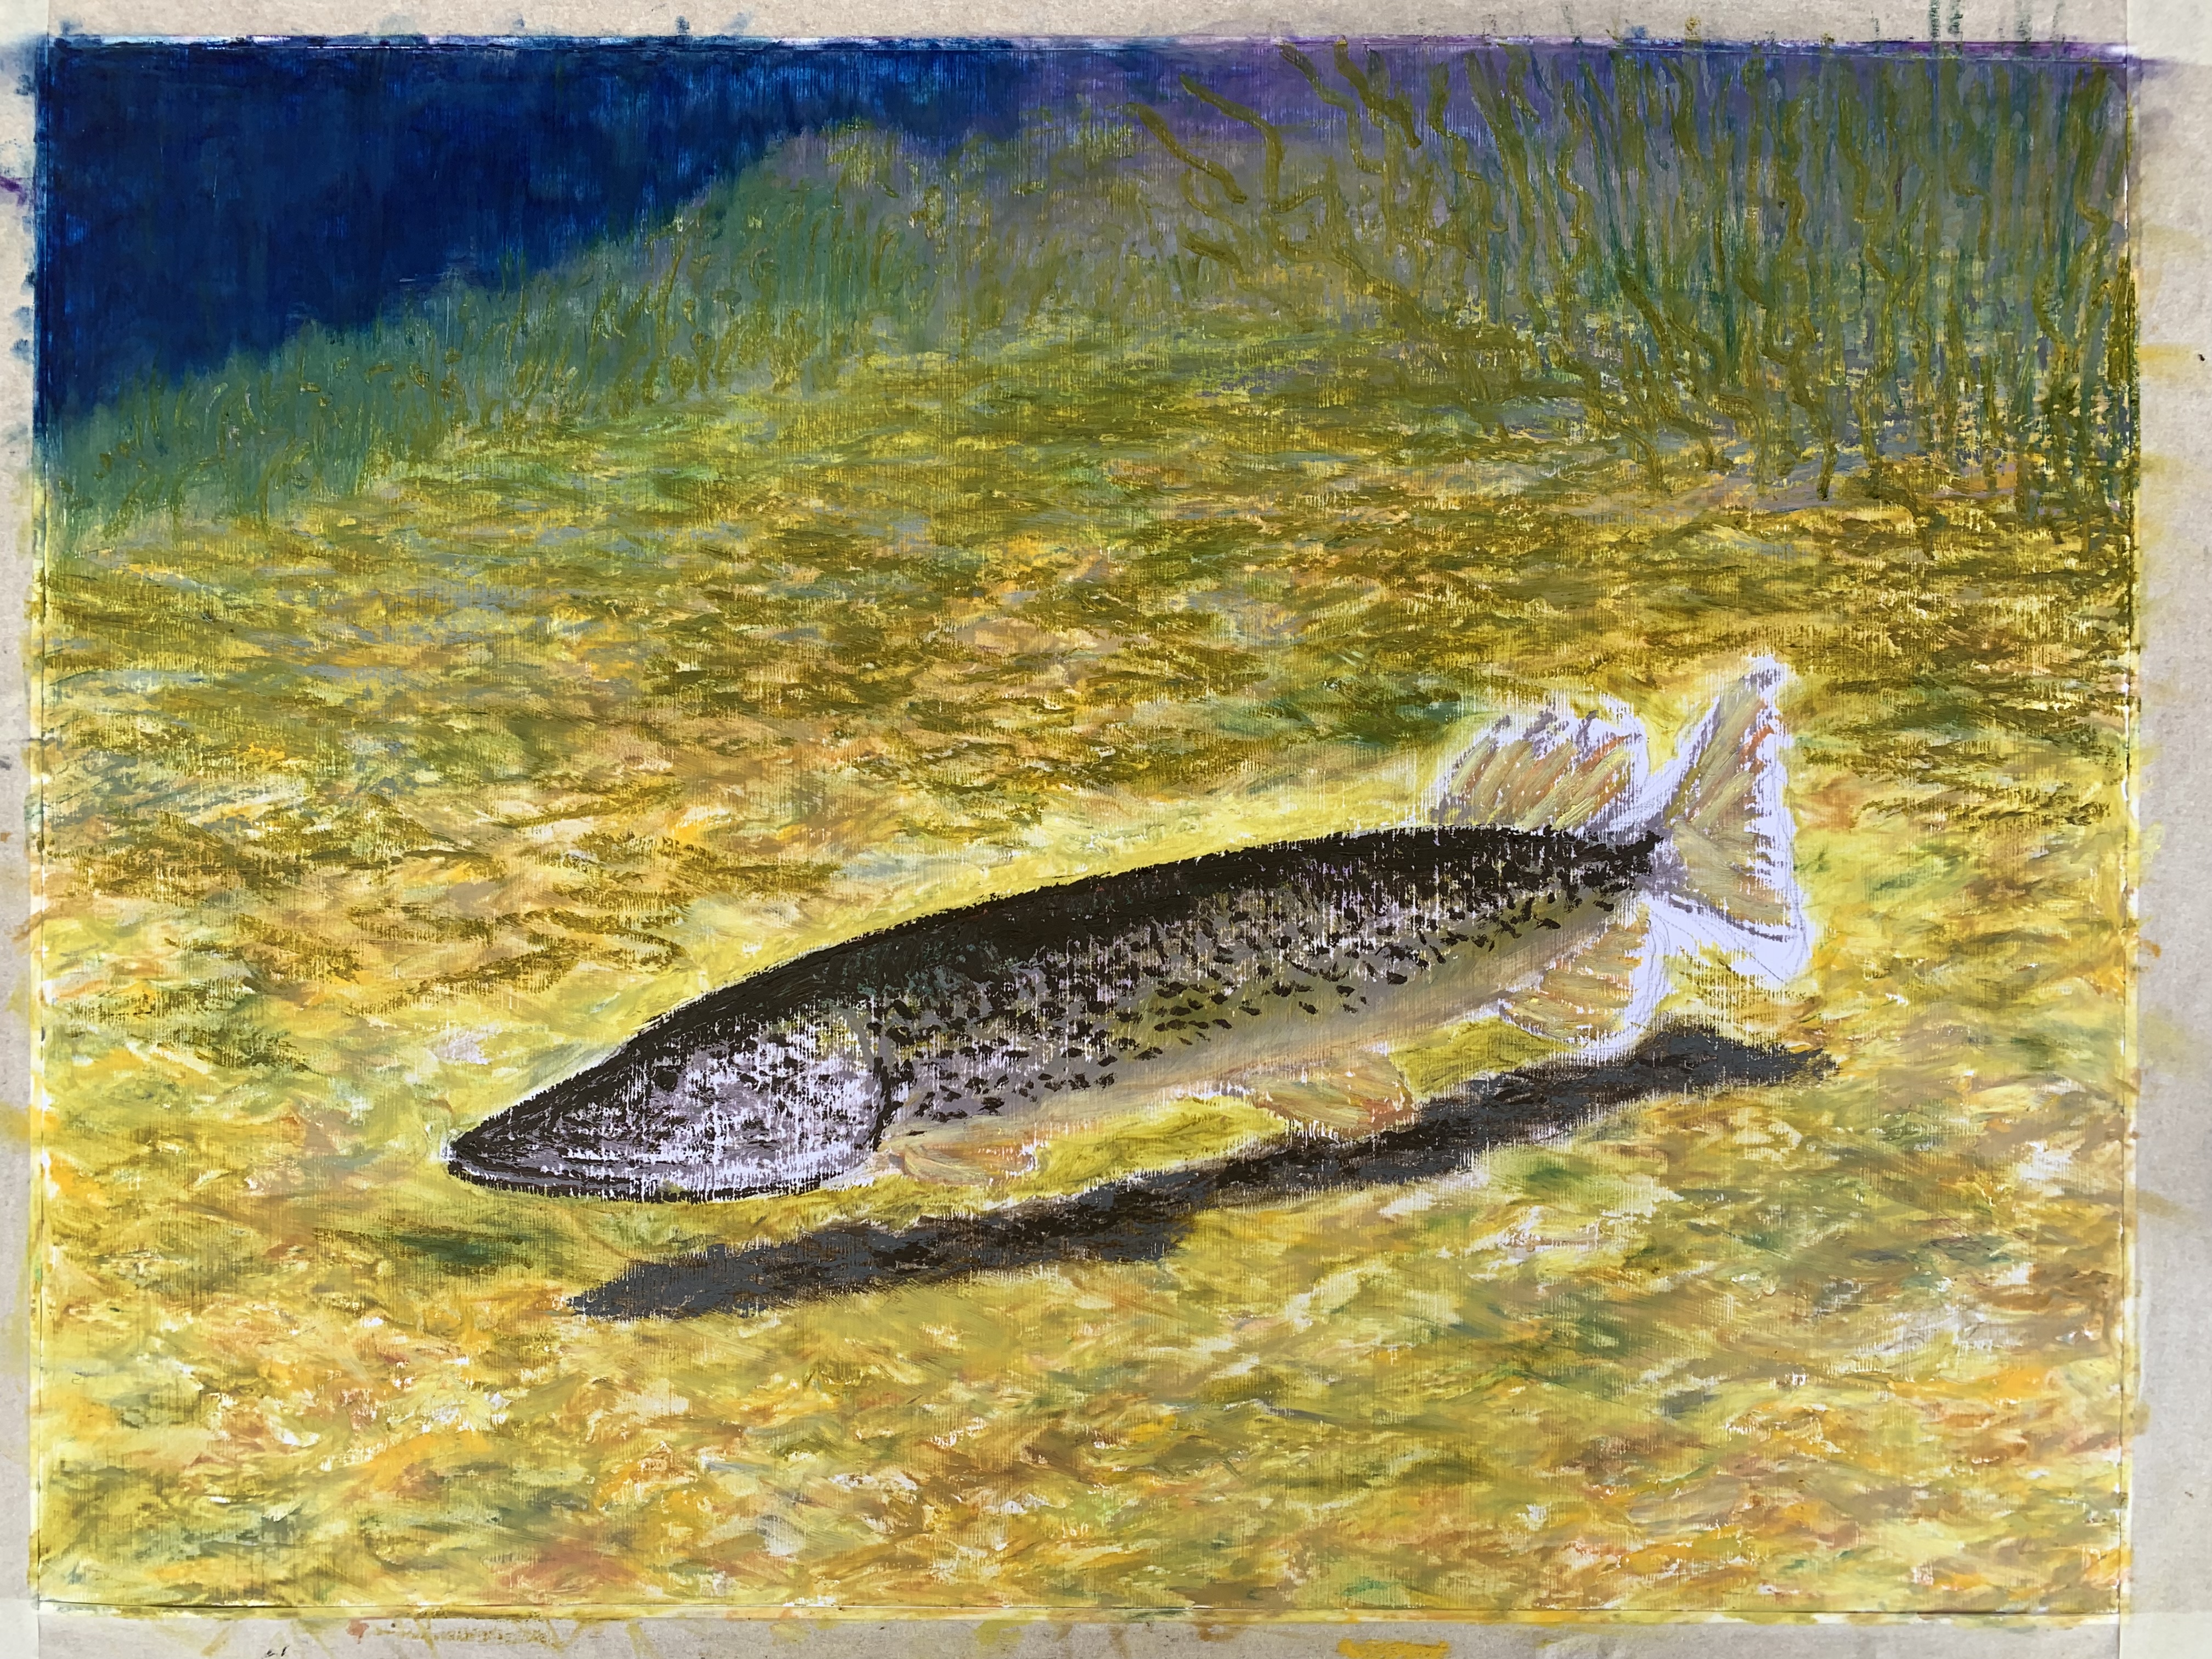 щука рыба картина масляная пастель пейзажи природы художник Альберт Сафиуллин